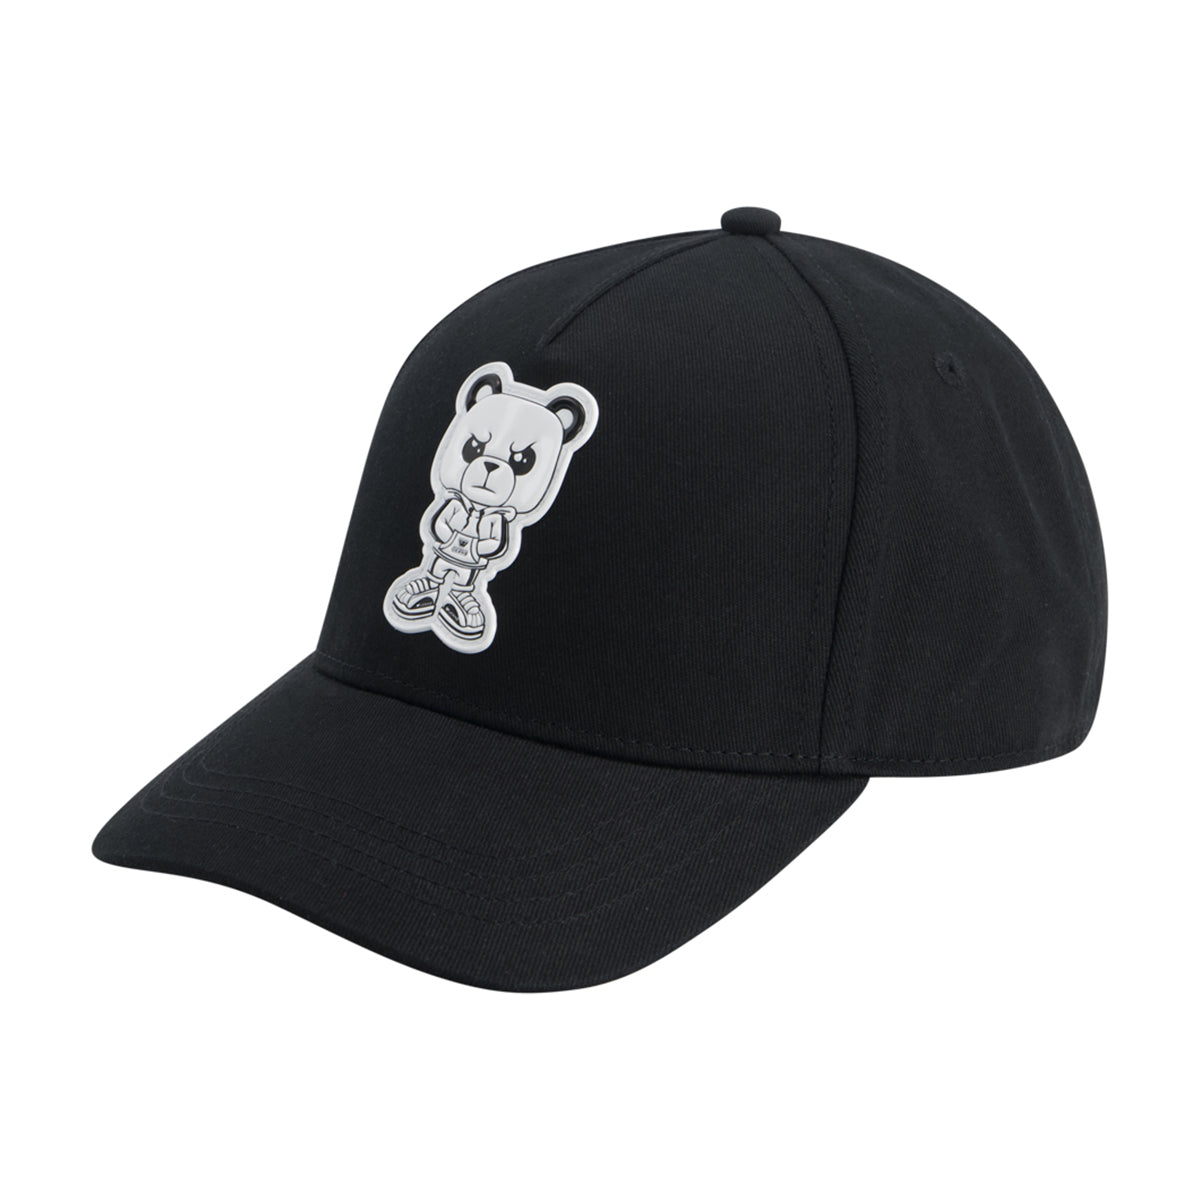 כובע מצחייה W JEANS הדפס לוגו לילדים